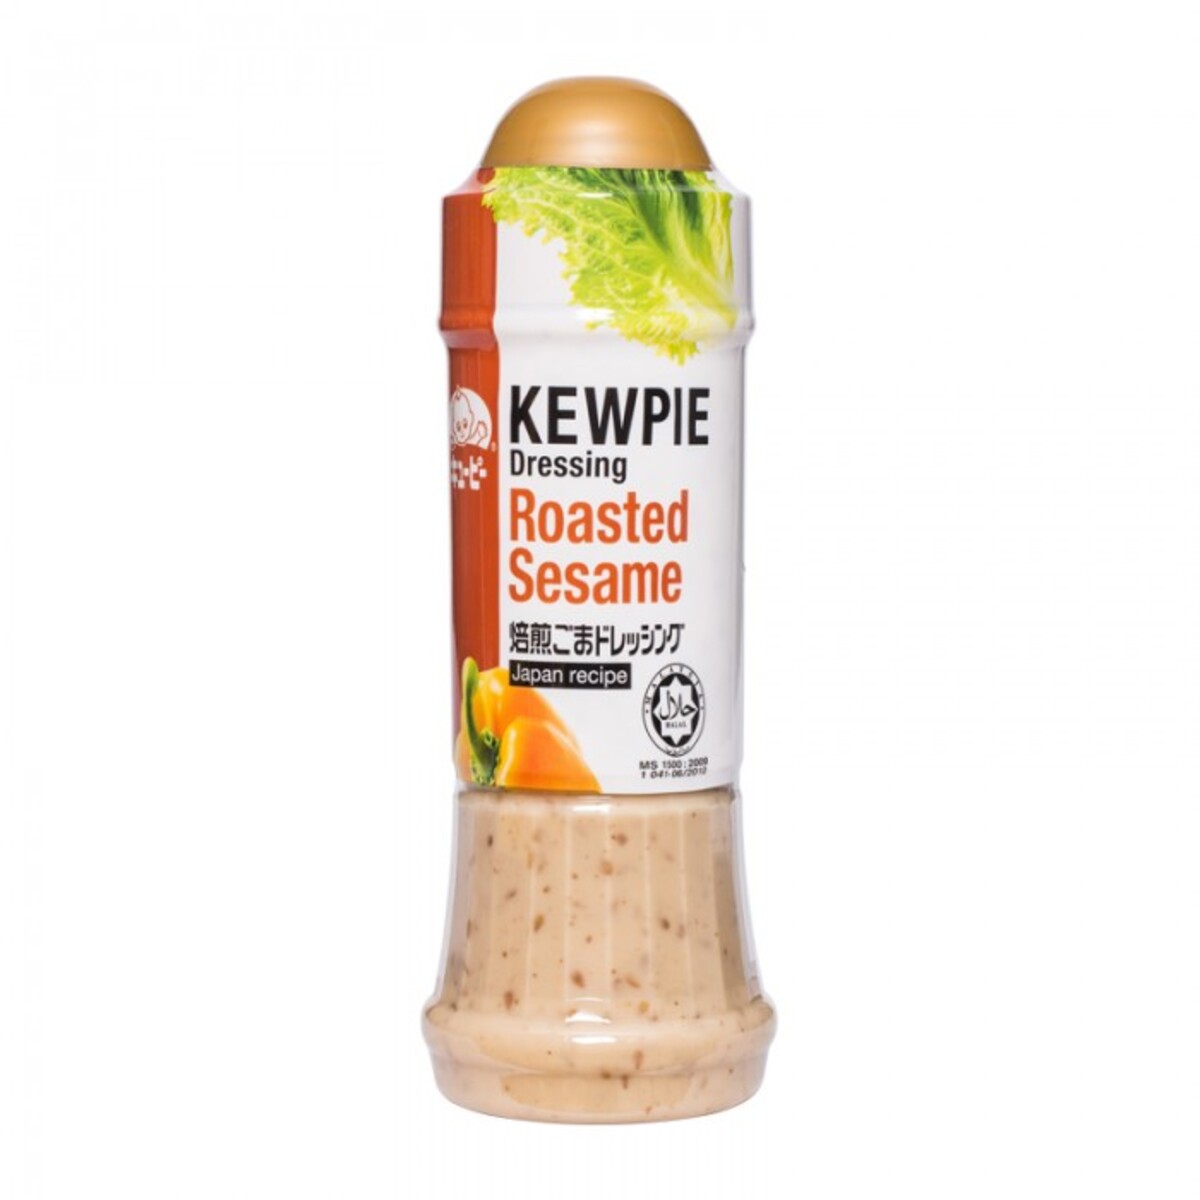 Kewpie roasted sesame